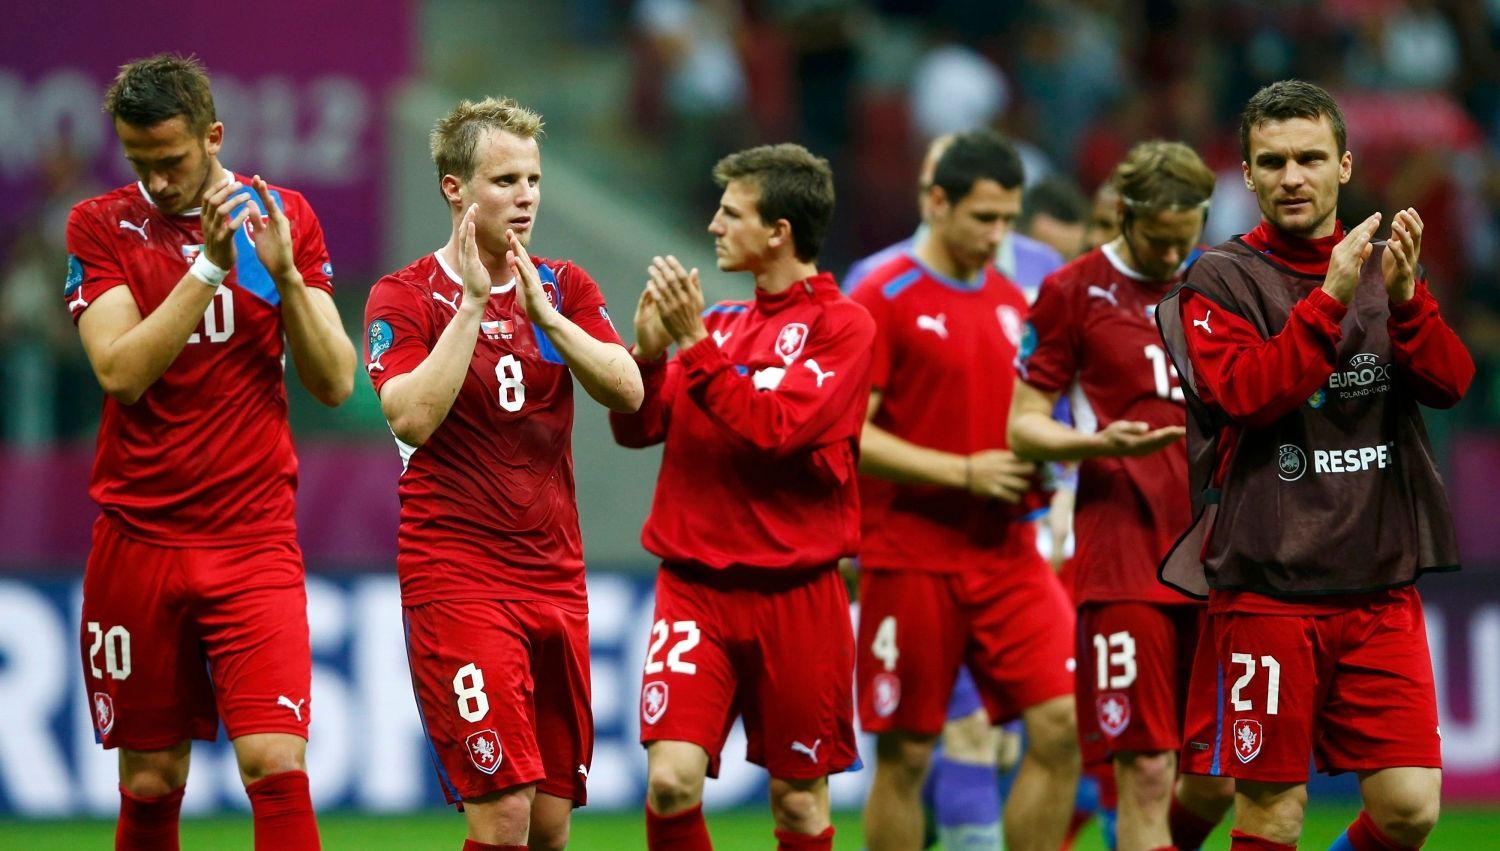 Čeští fotbalisté děkují fanouškům po utkání Česko - Portugalsko ve čtvrtfinále Eura 2012.